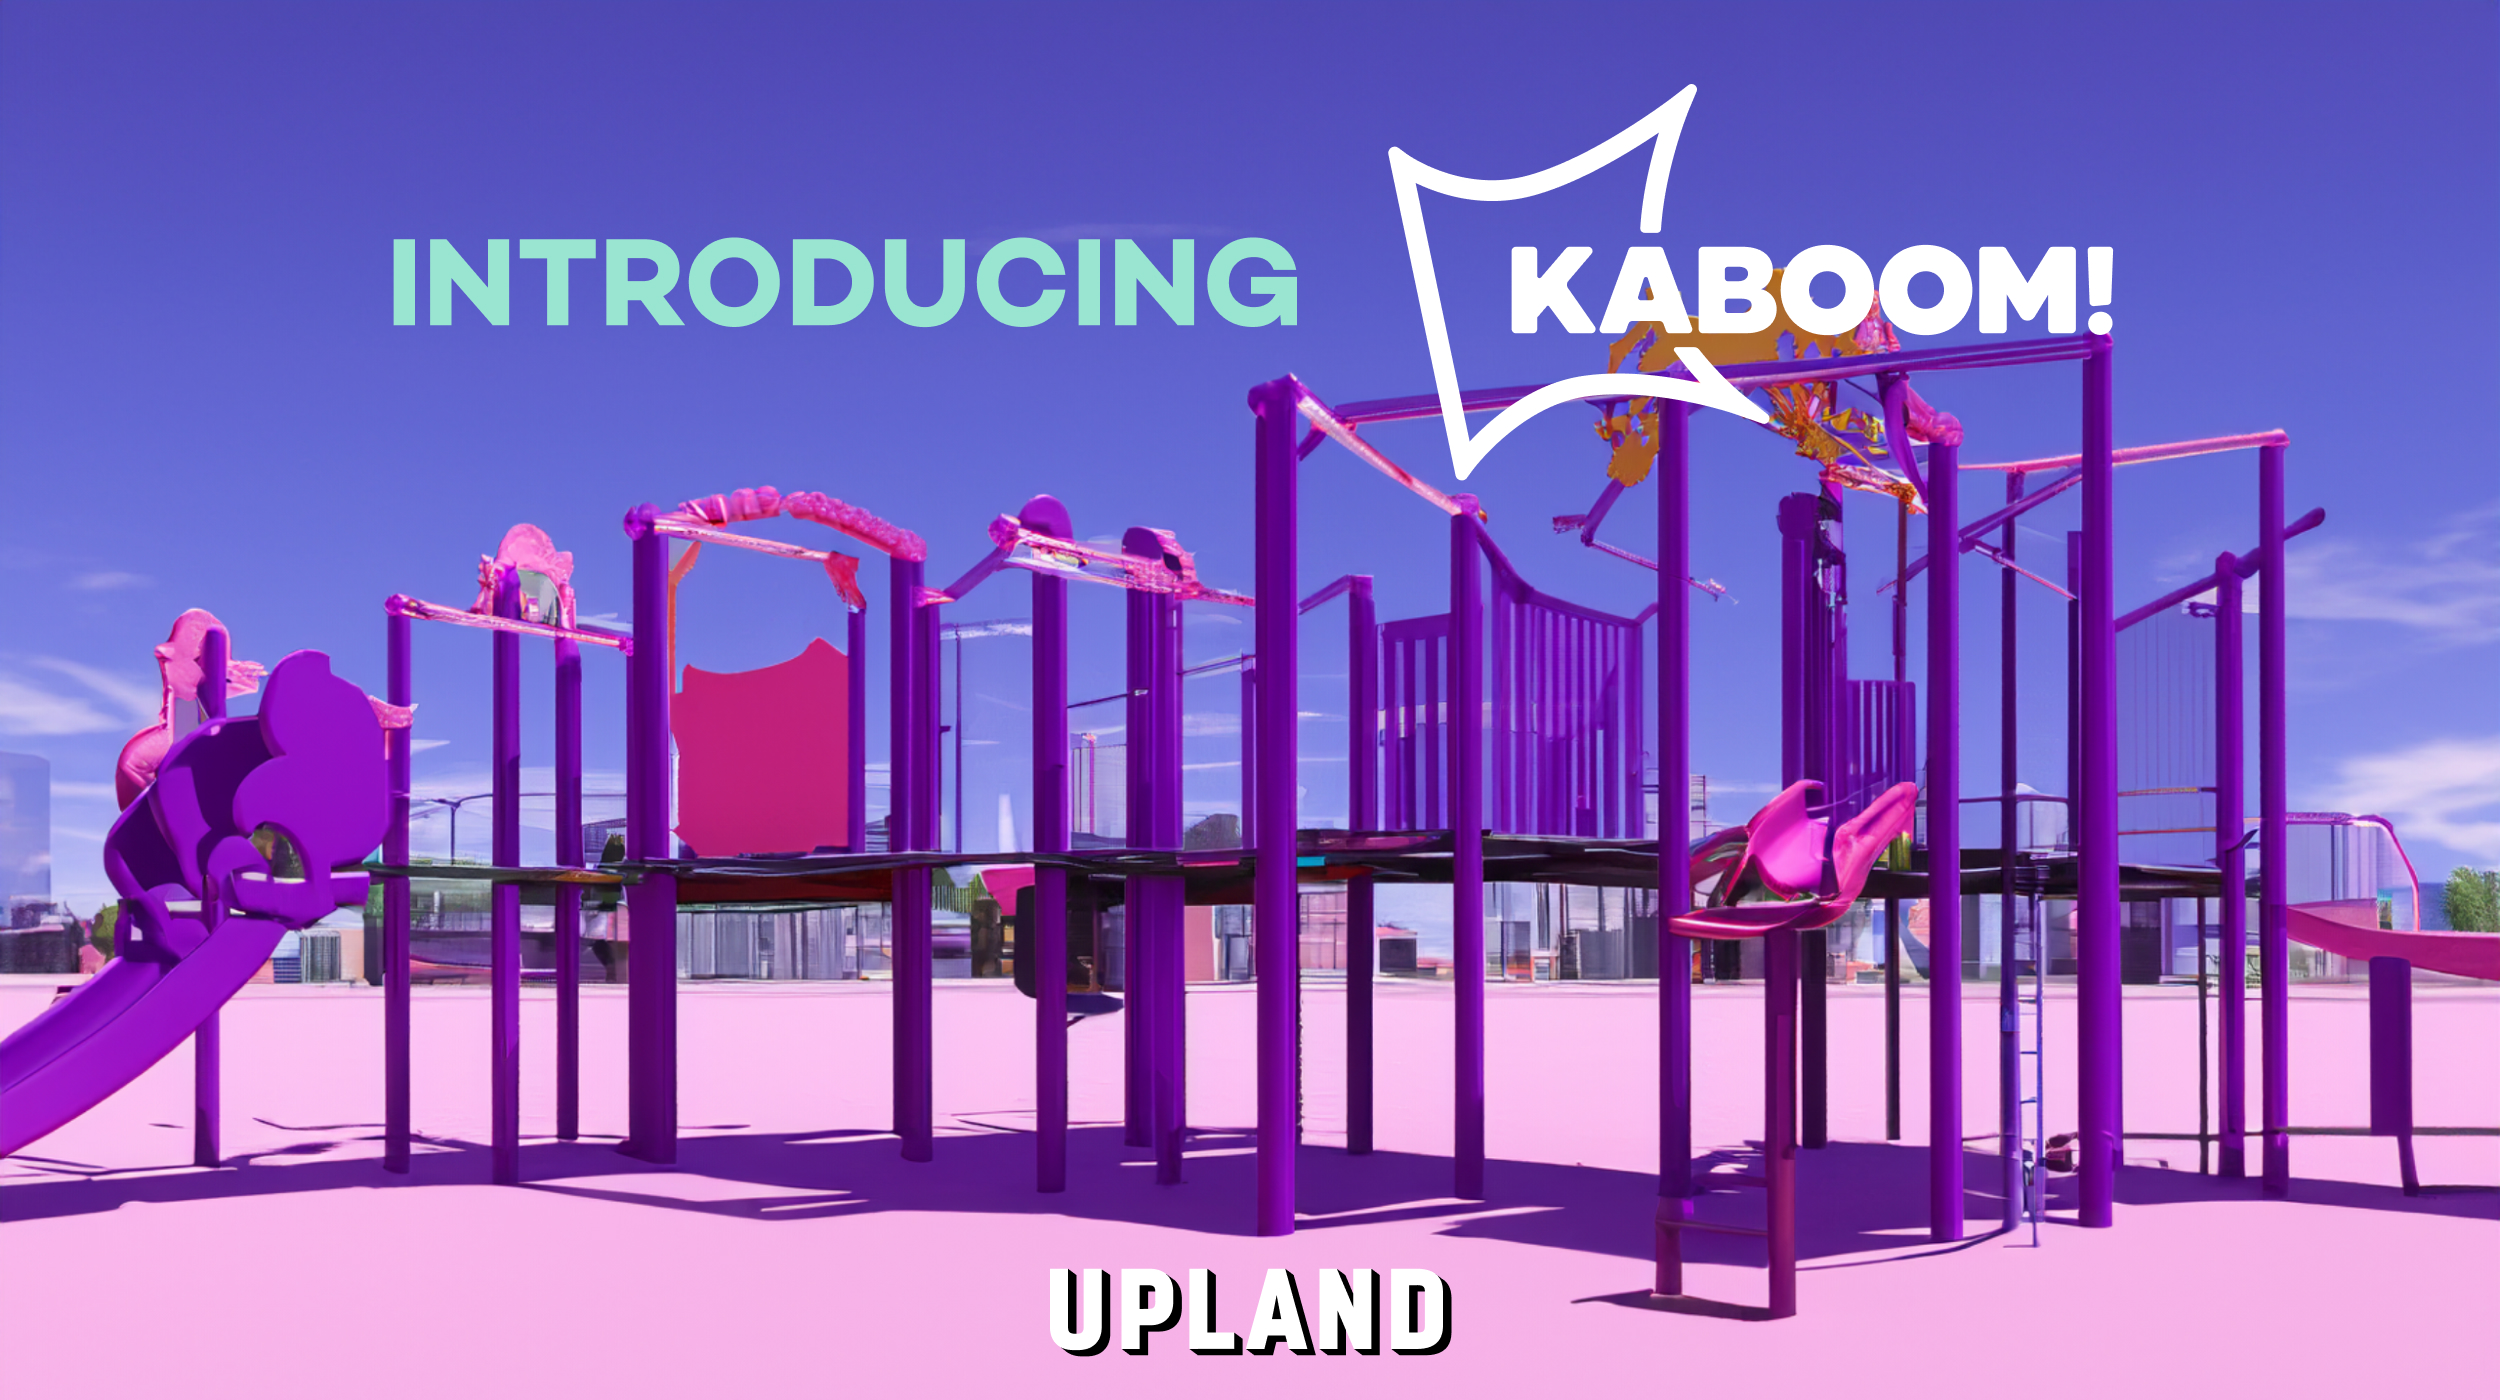 Felvidék és KABOOM! Partner a Playspace egyenlőtlenség megoldásában